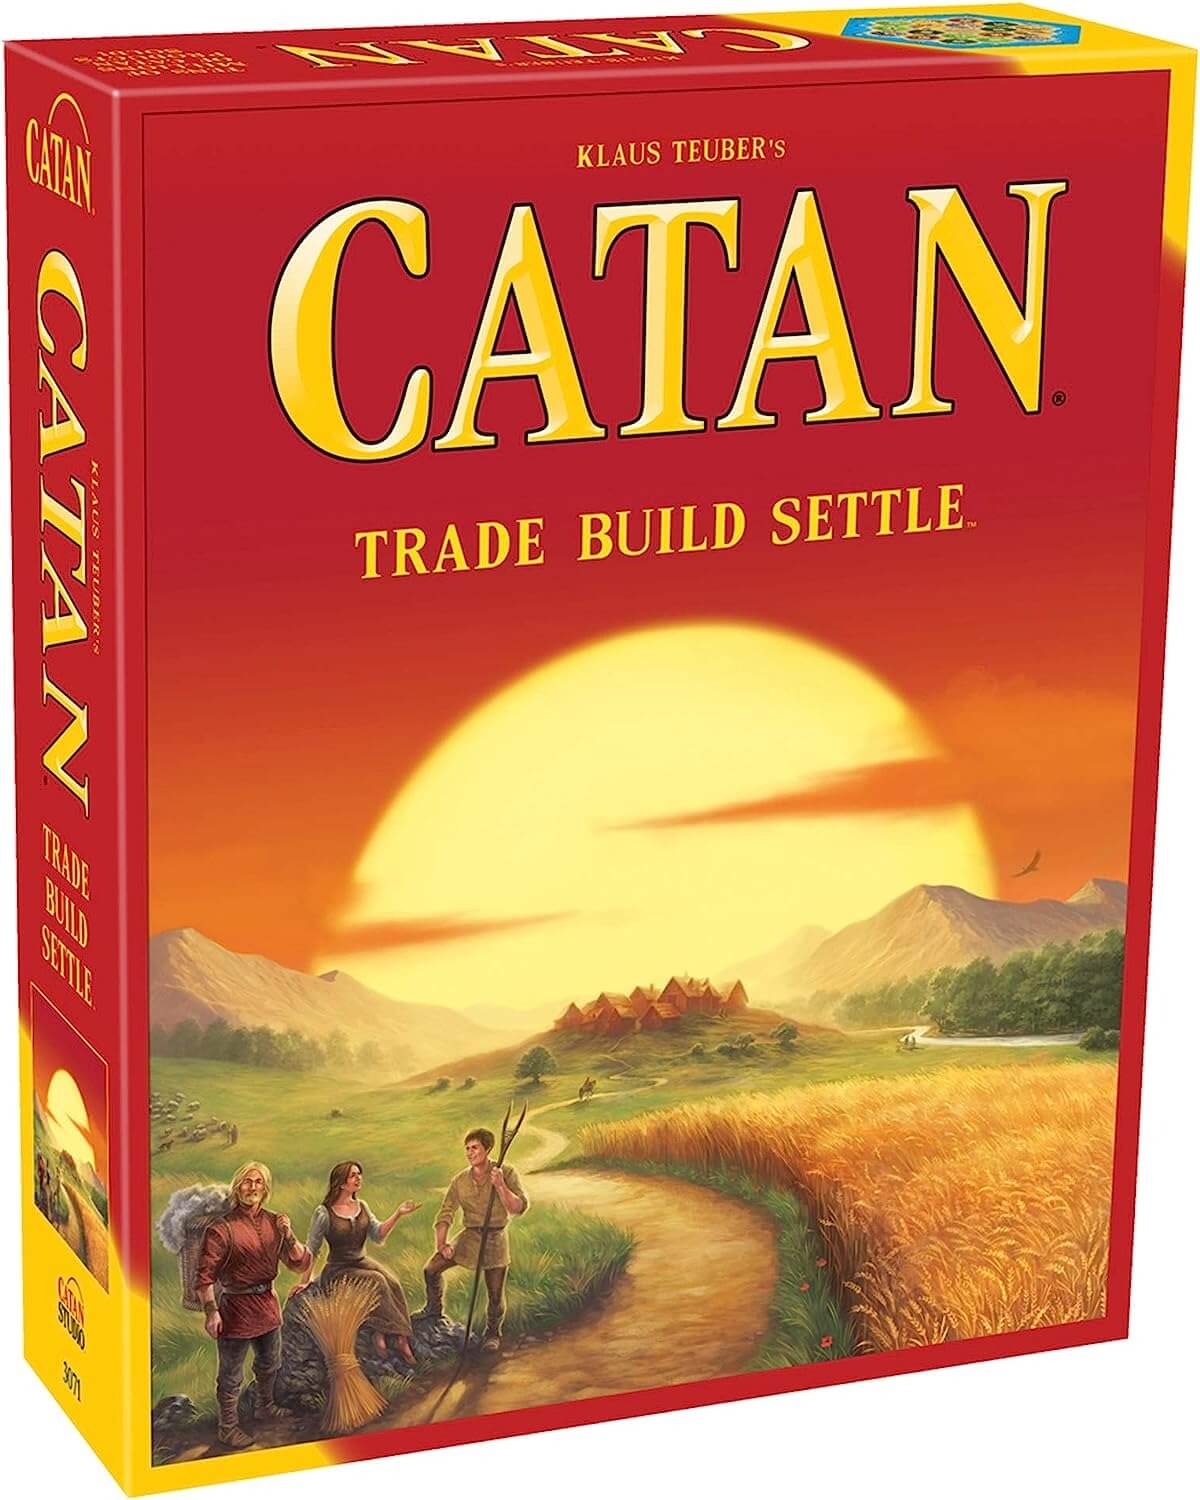 Настольная игра Catan Studio Catan: Trade Build Settle полный рабочий переворот на английском языке настольная игра карточные карты для семейных настольных игр и с руководством